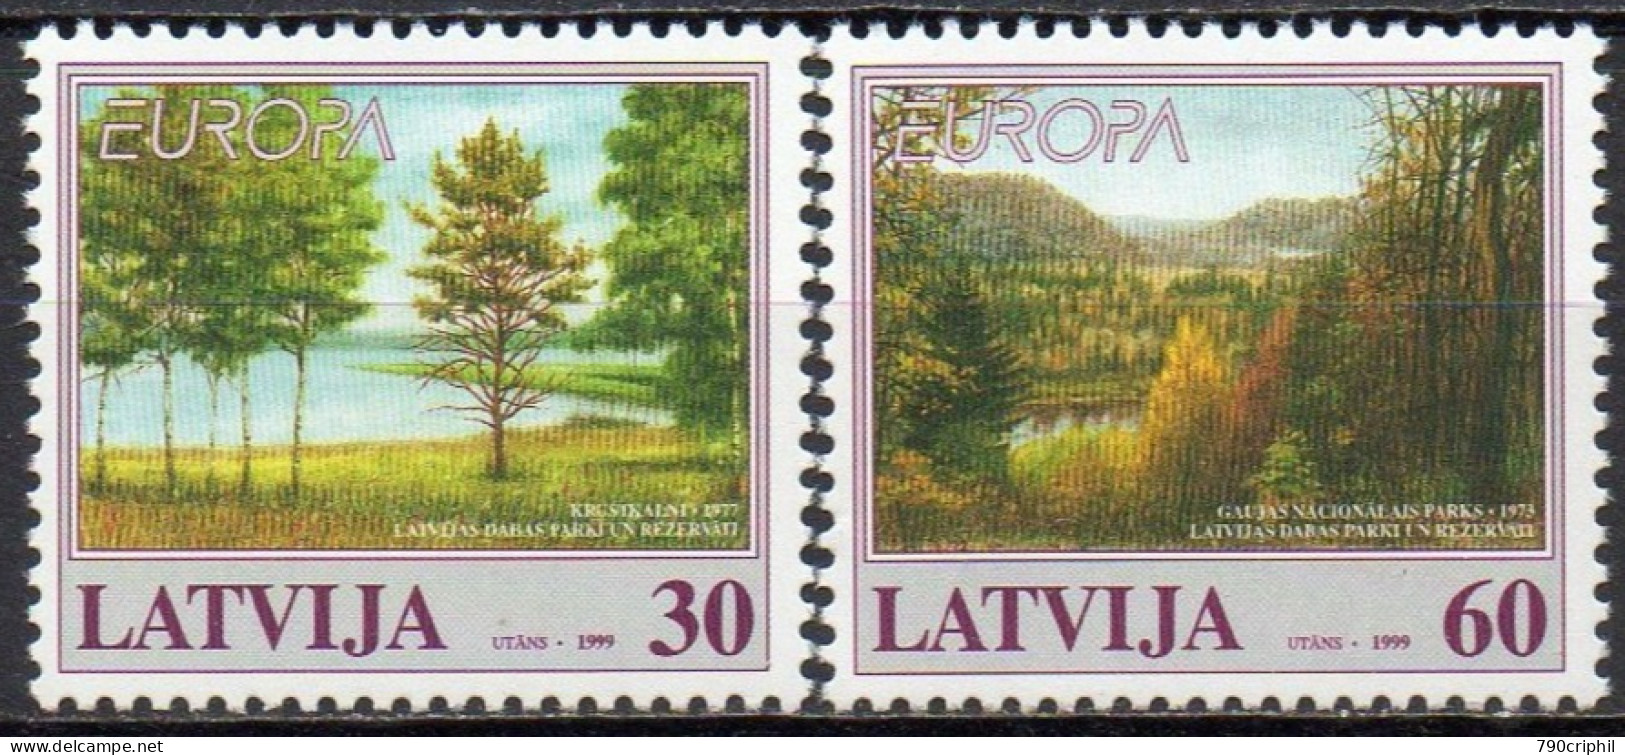 CEPT / Europa 1999 Lettonie N° 464 Et 465 ** Réserves Et Parcs Naturels - 1999